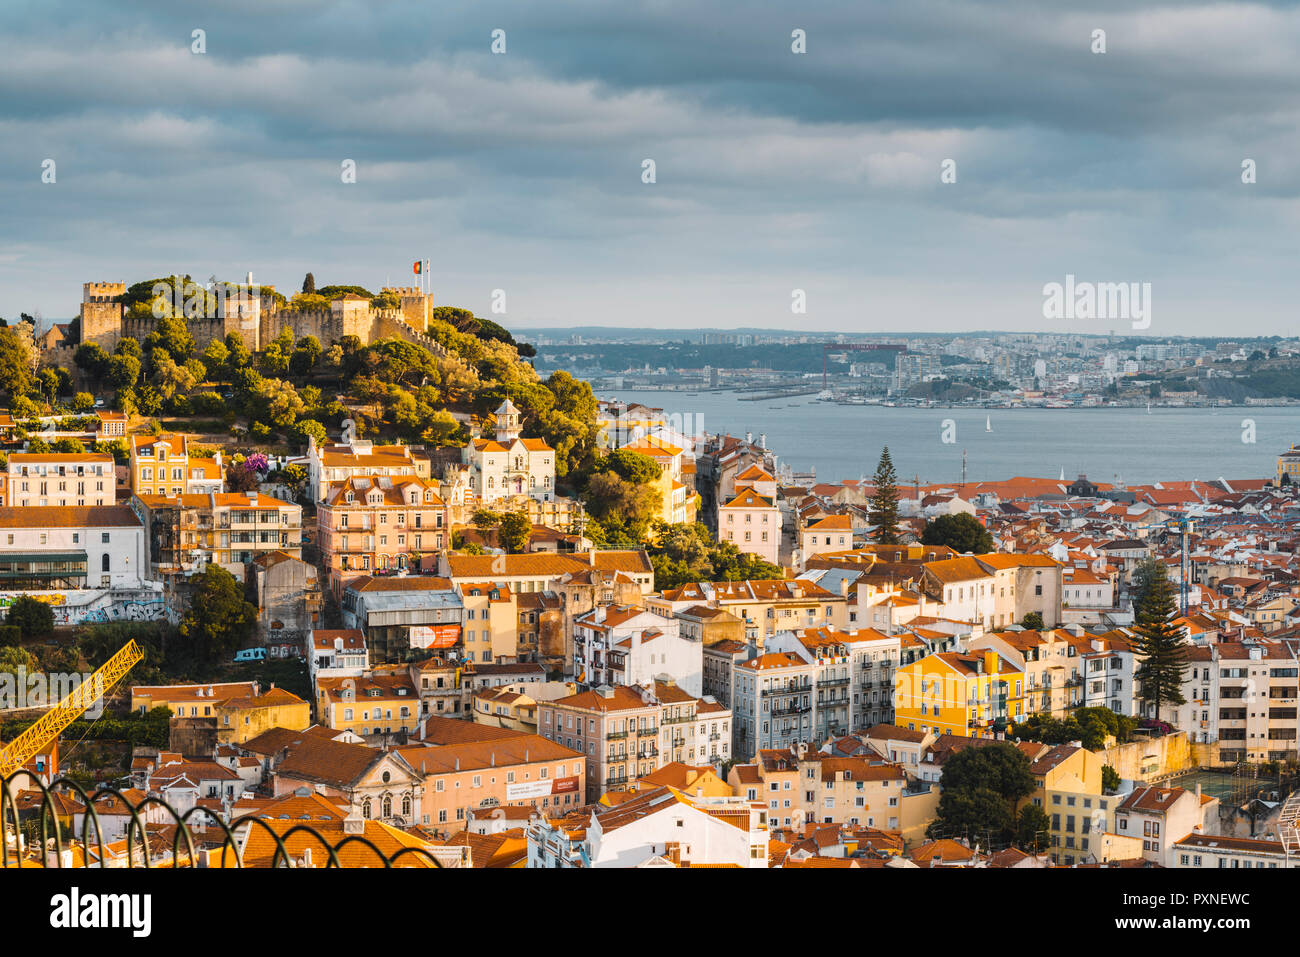 Portugal, Lisbon. Skyline and Sao Jorge castle. Stock Photo